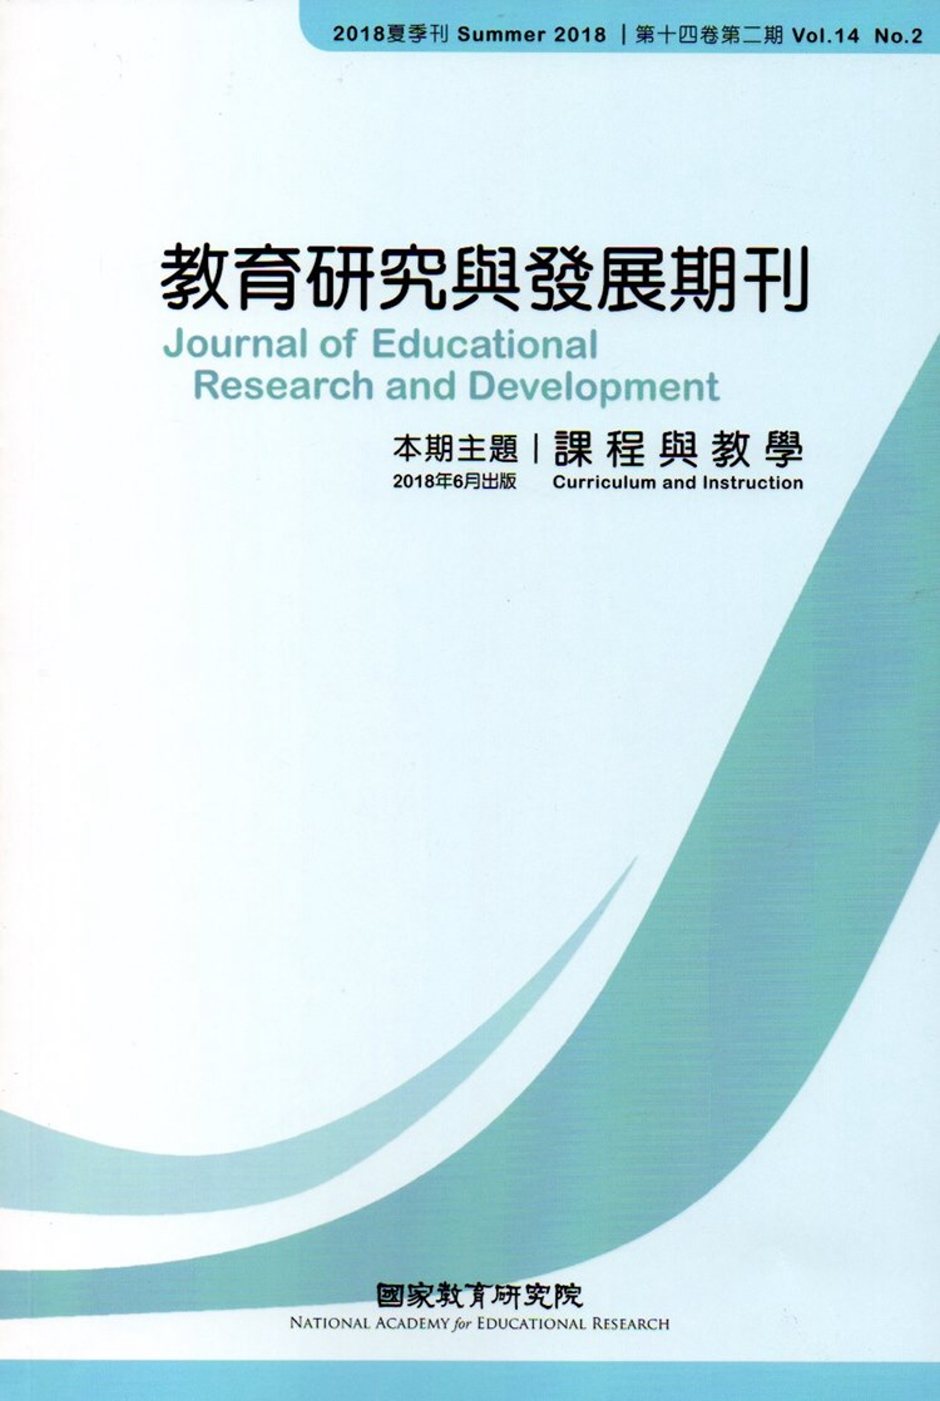 教育研究與發展期刊第14卷2期(107年夏季刊)